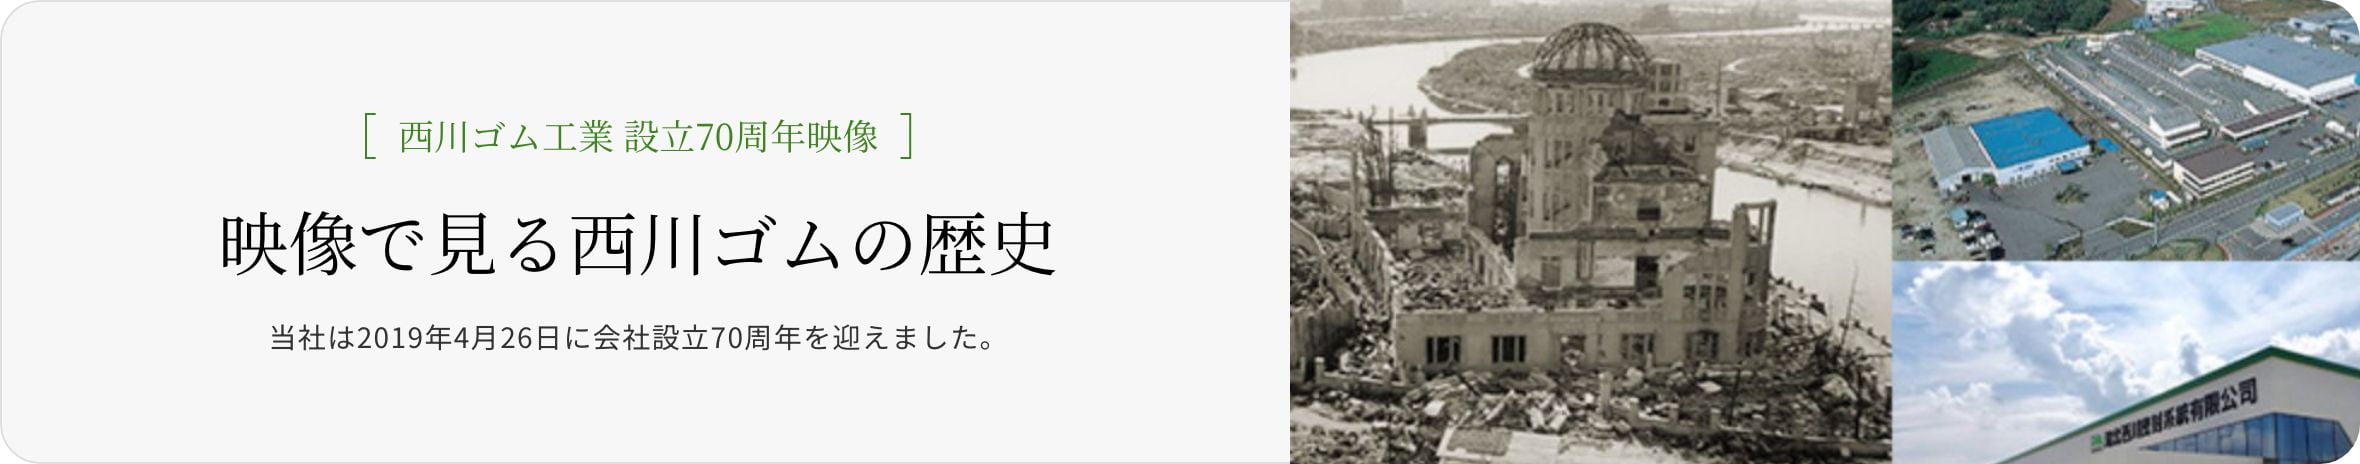 [Since 1949]西川ゴム工業 設立70周年映像当社は2019年4月26日に会社設立70周年を迎えました。